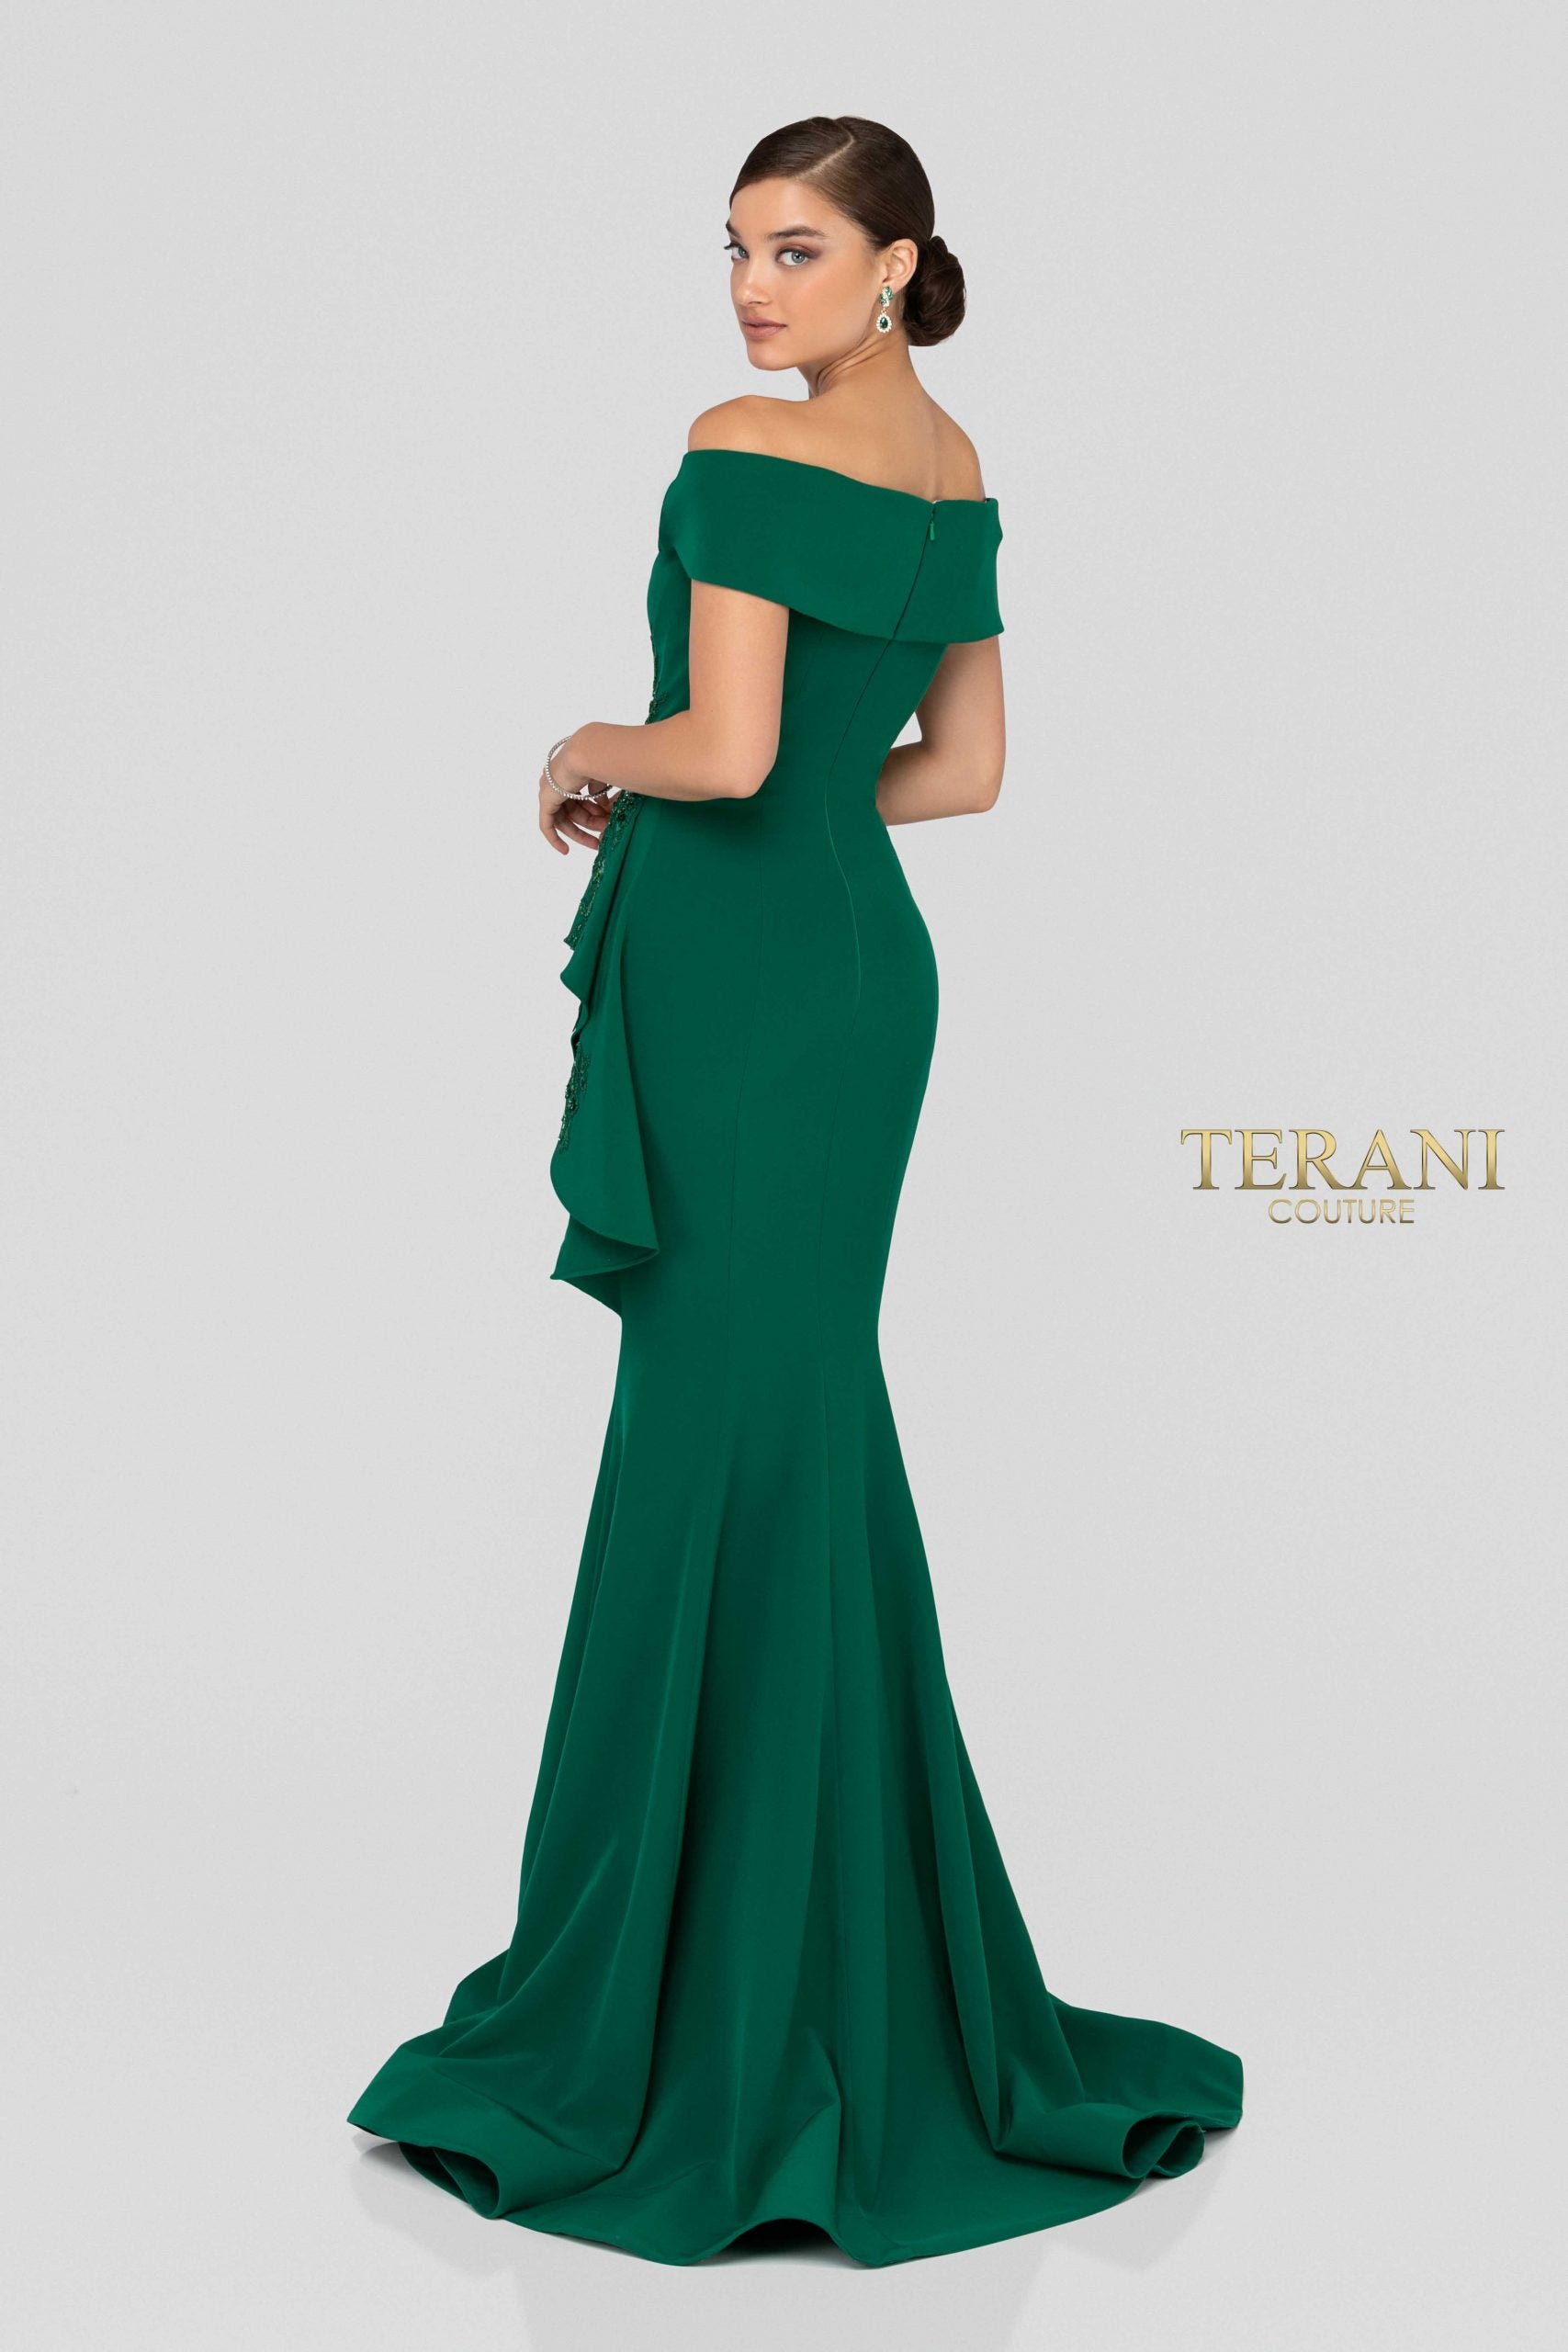 Terani 1911M9339 موديل فستان سهرة